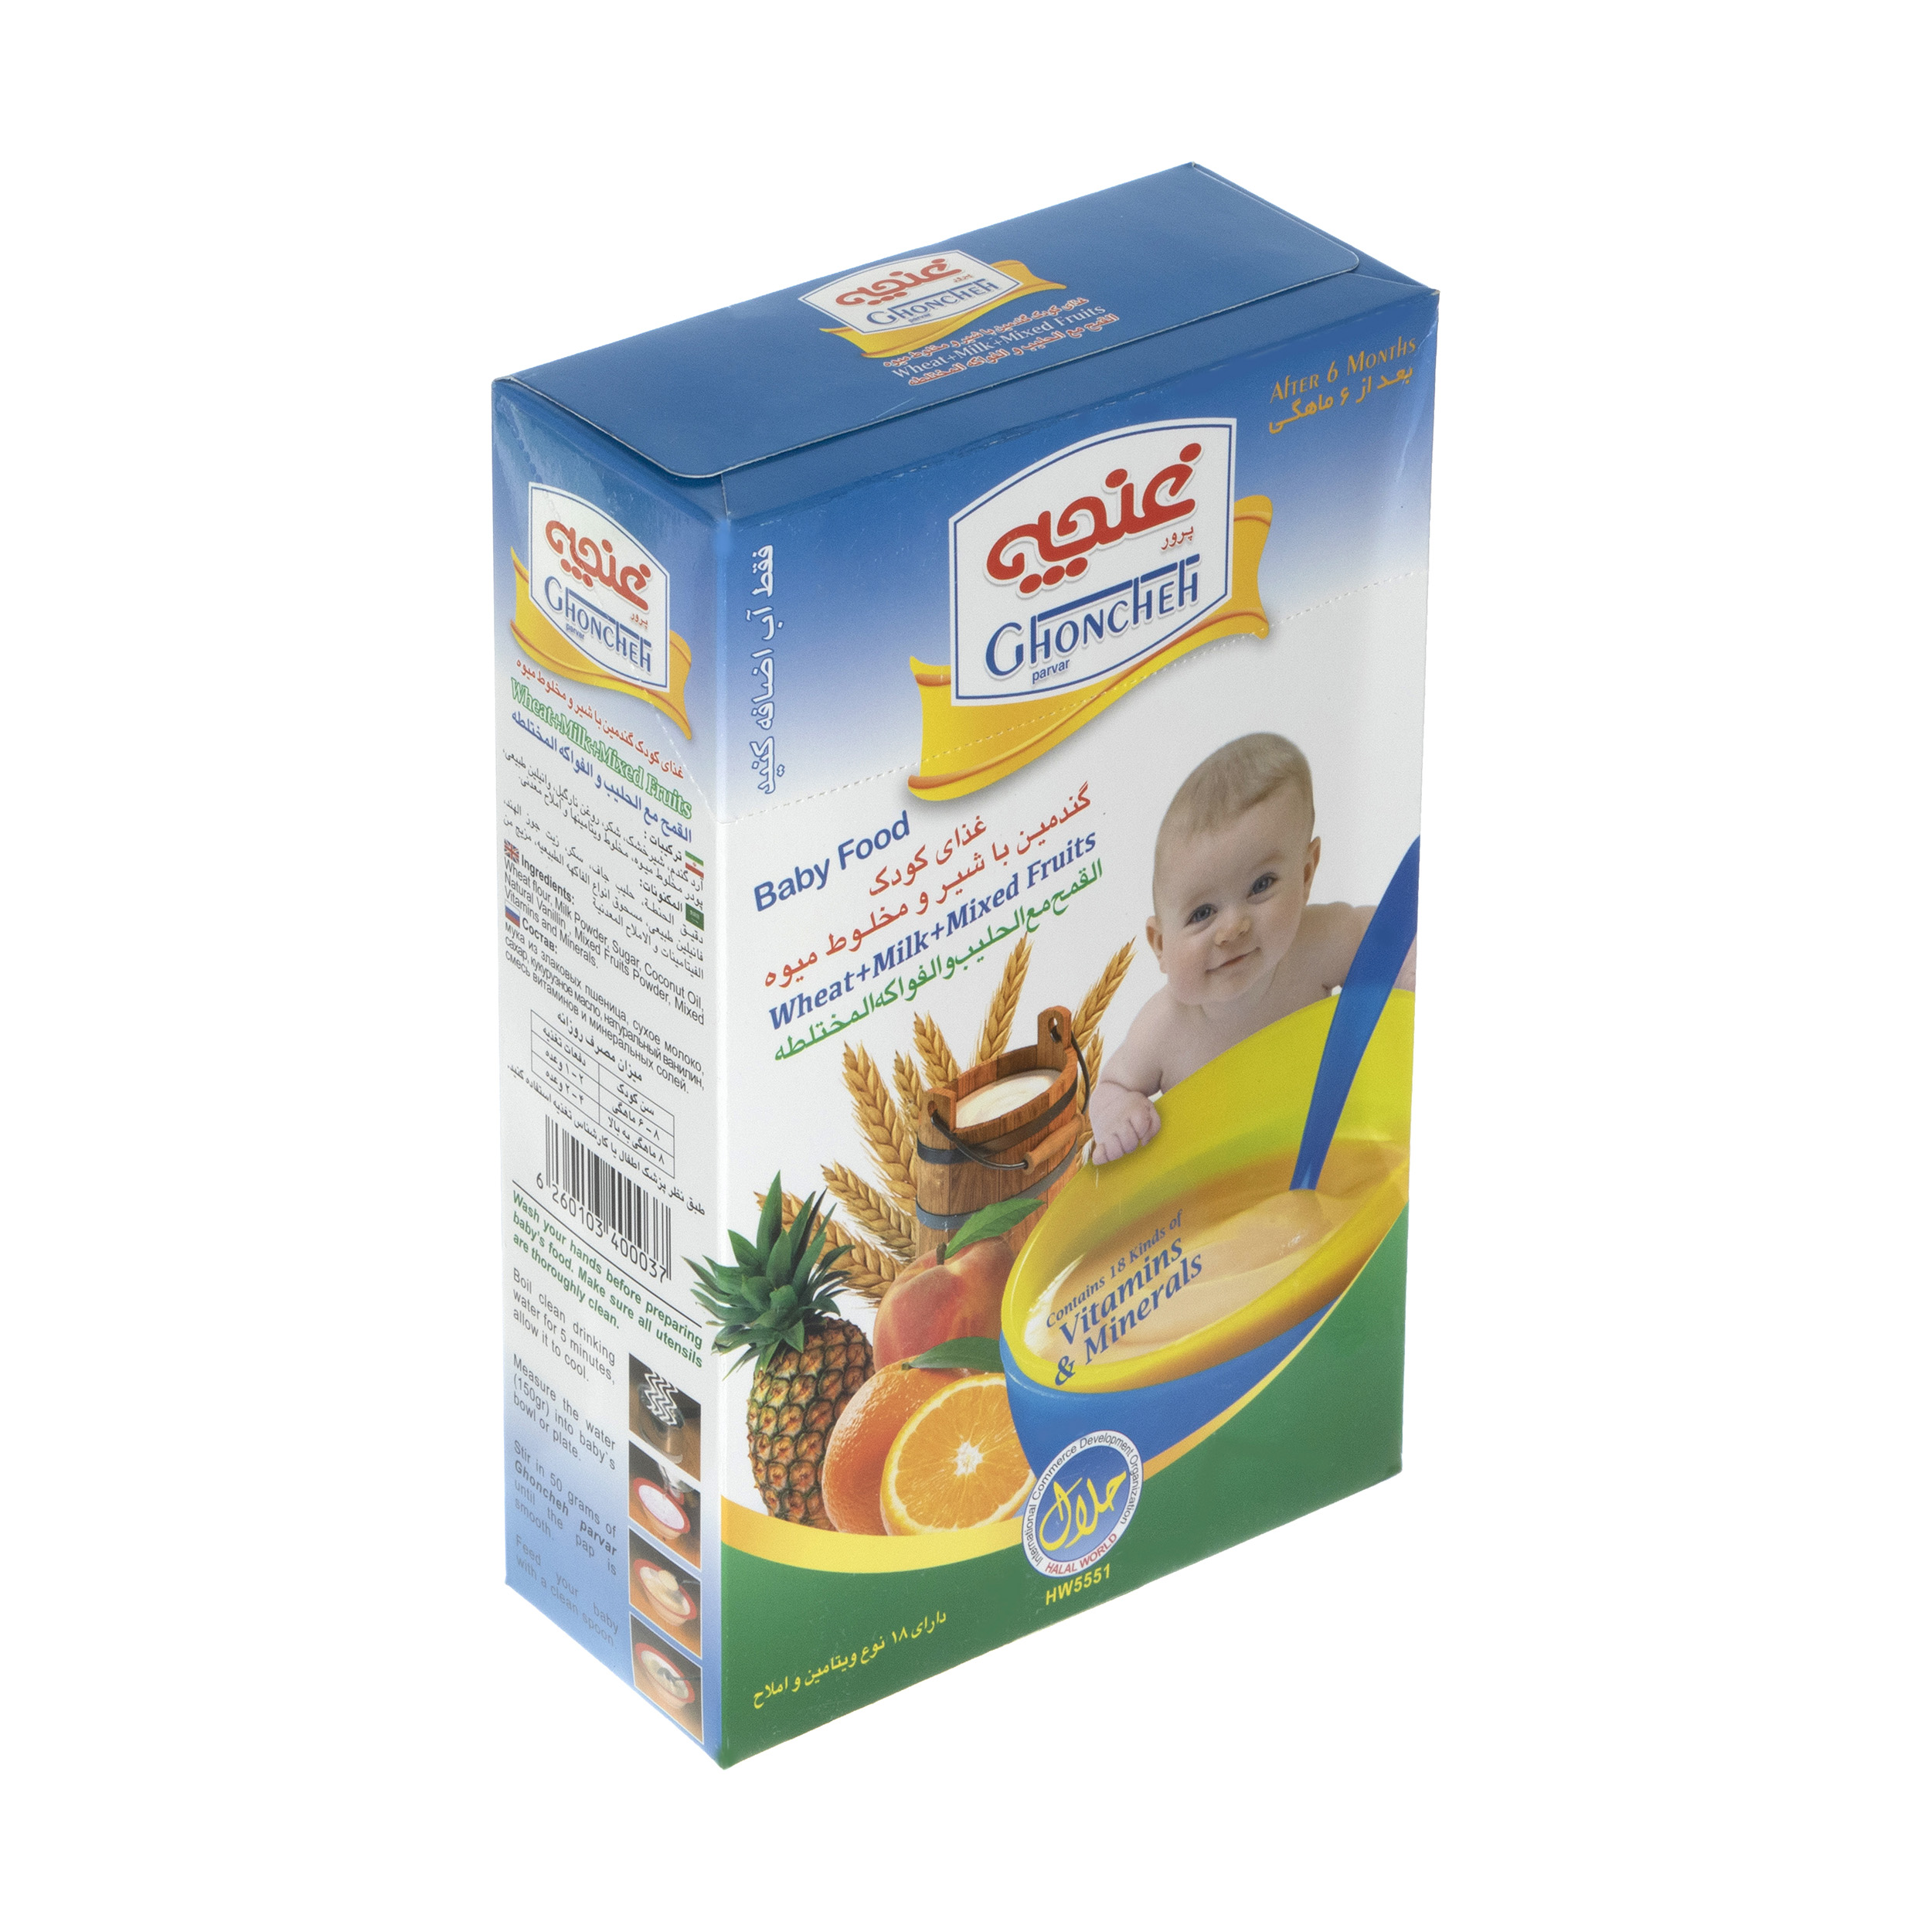 غذا کودک گندمین غنچه پرور با طعم شیر و مخلوط میوه - 300 گرم